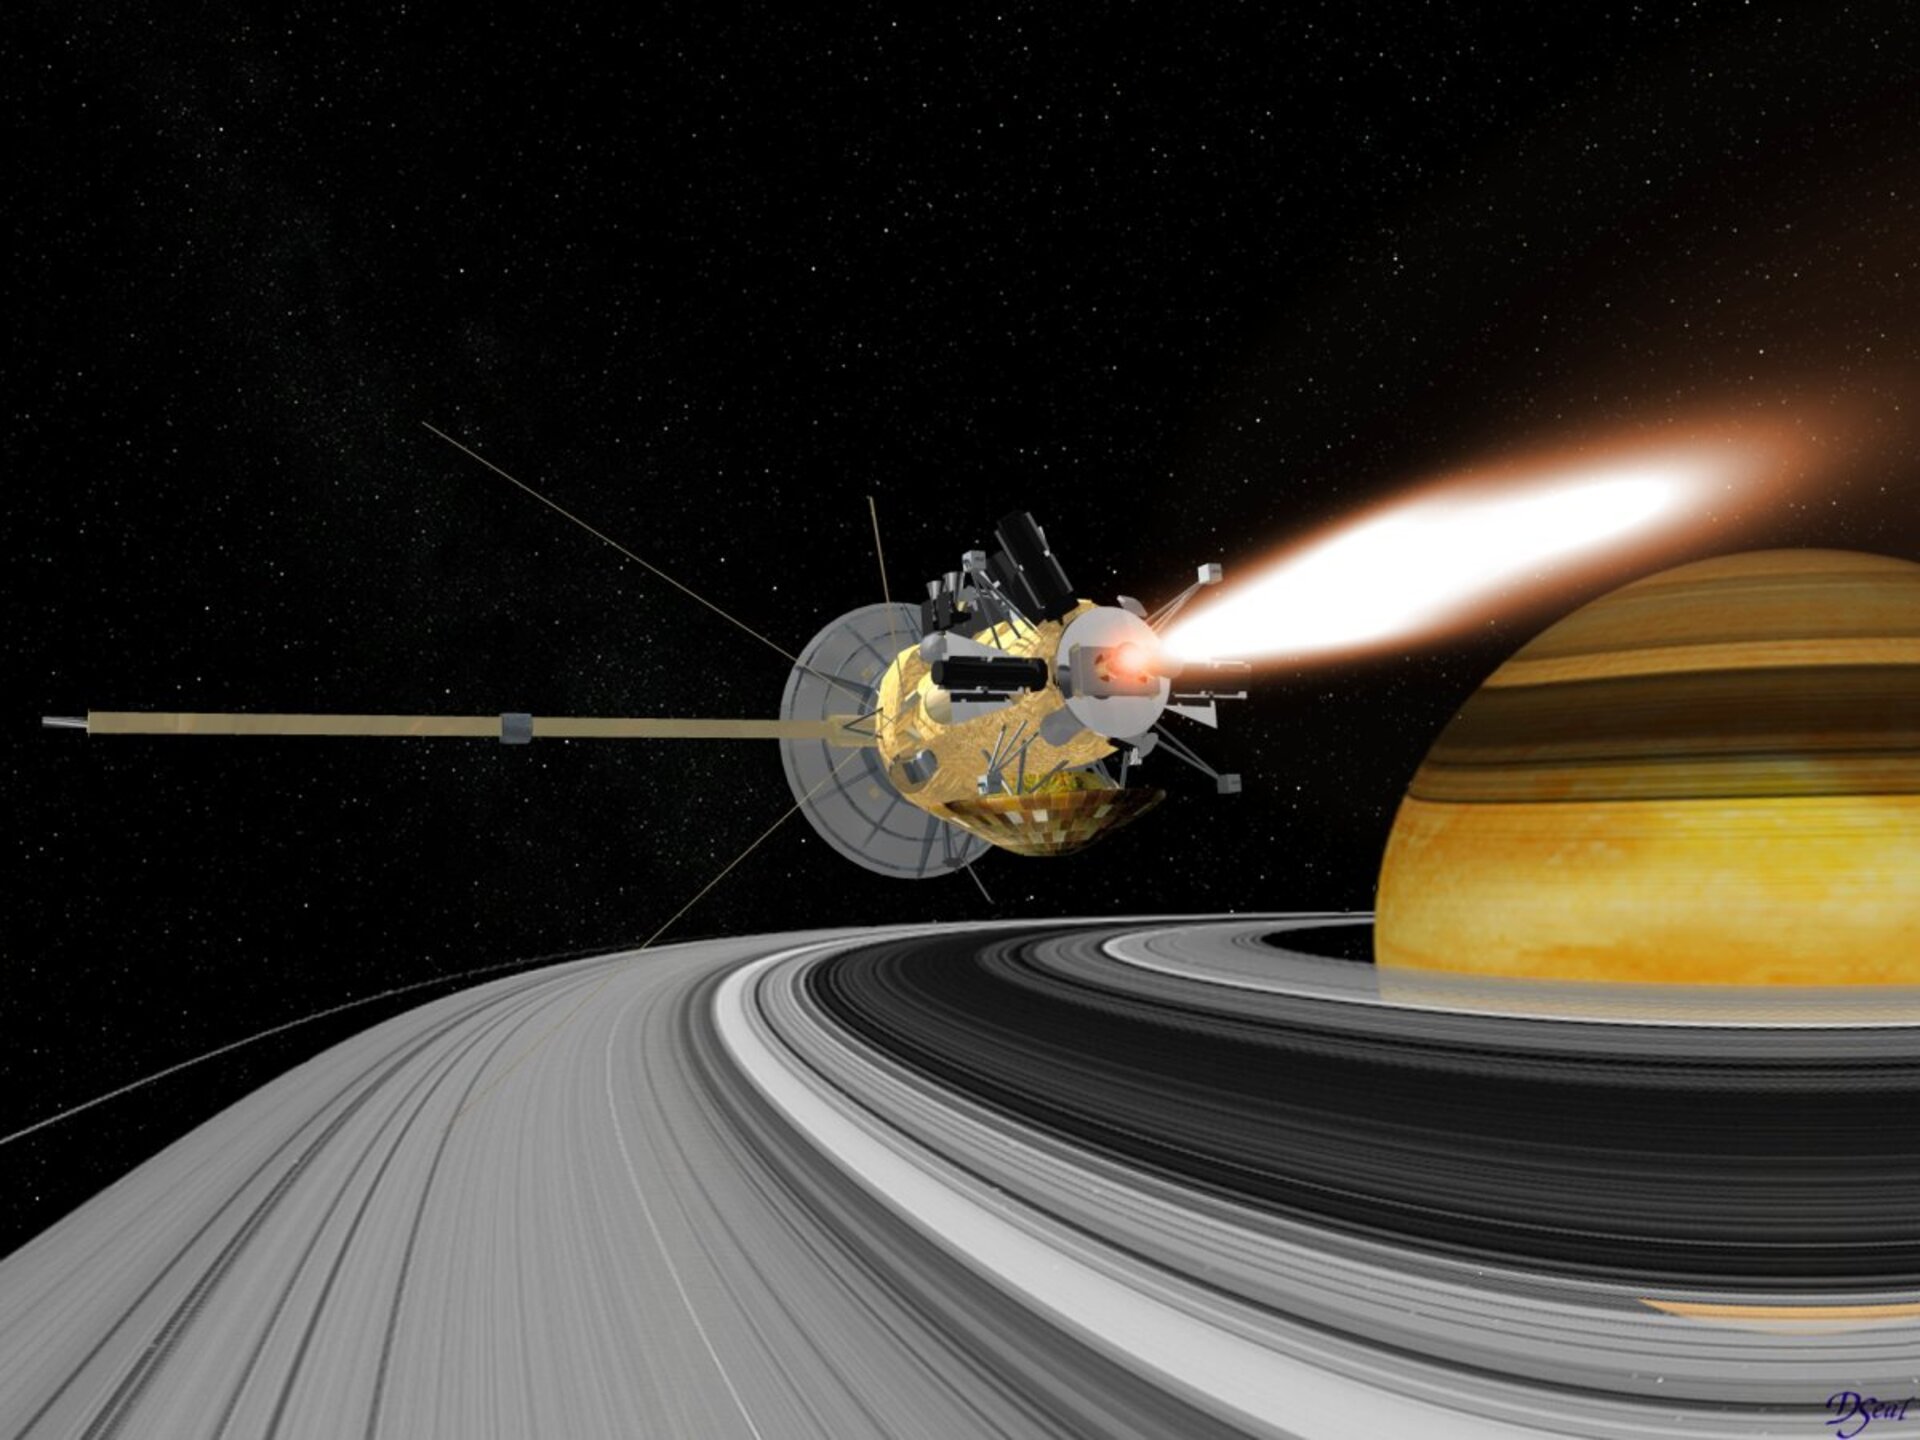 Saturn orbit insertion manoeuvre